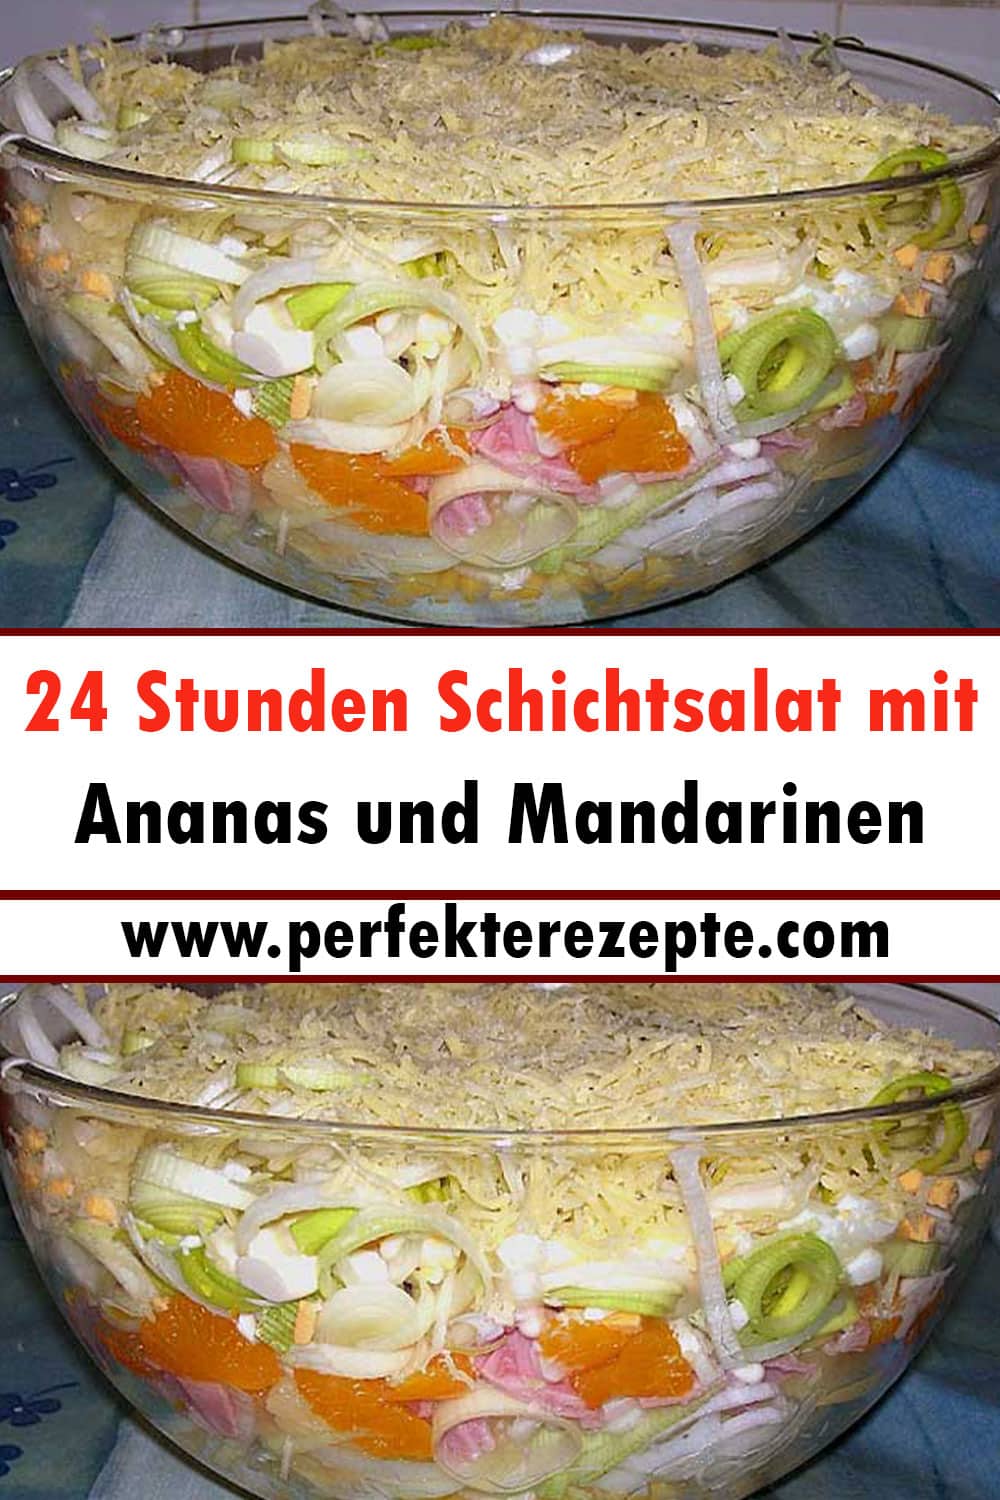 24 Stunden Schichtsalat mit Ananas und Mandarinen Rezept